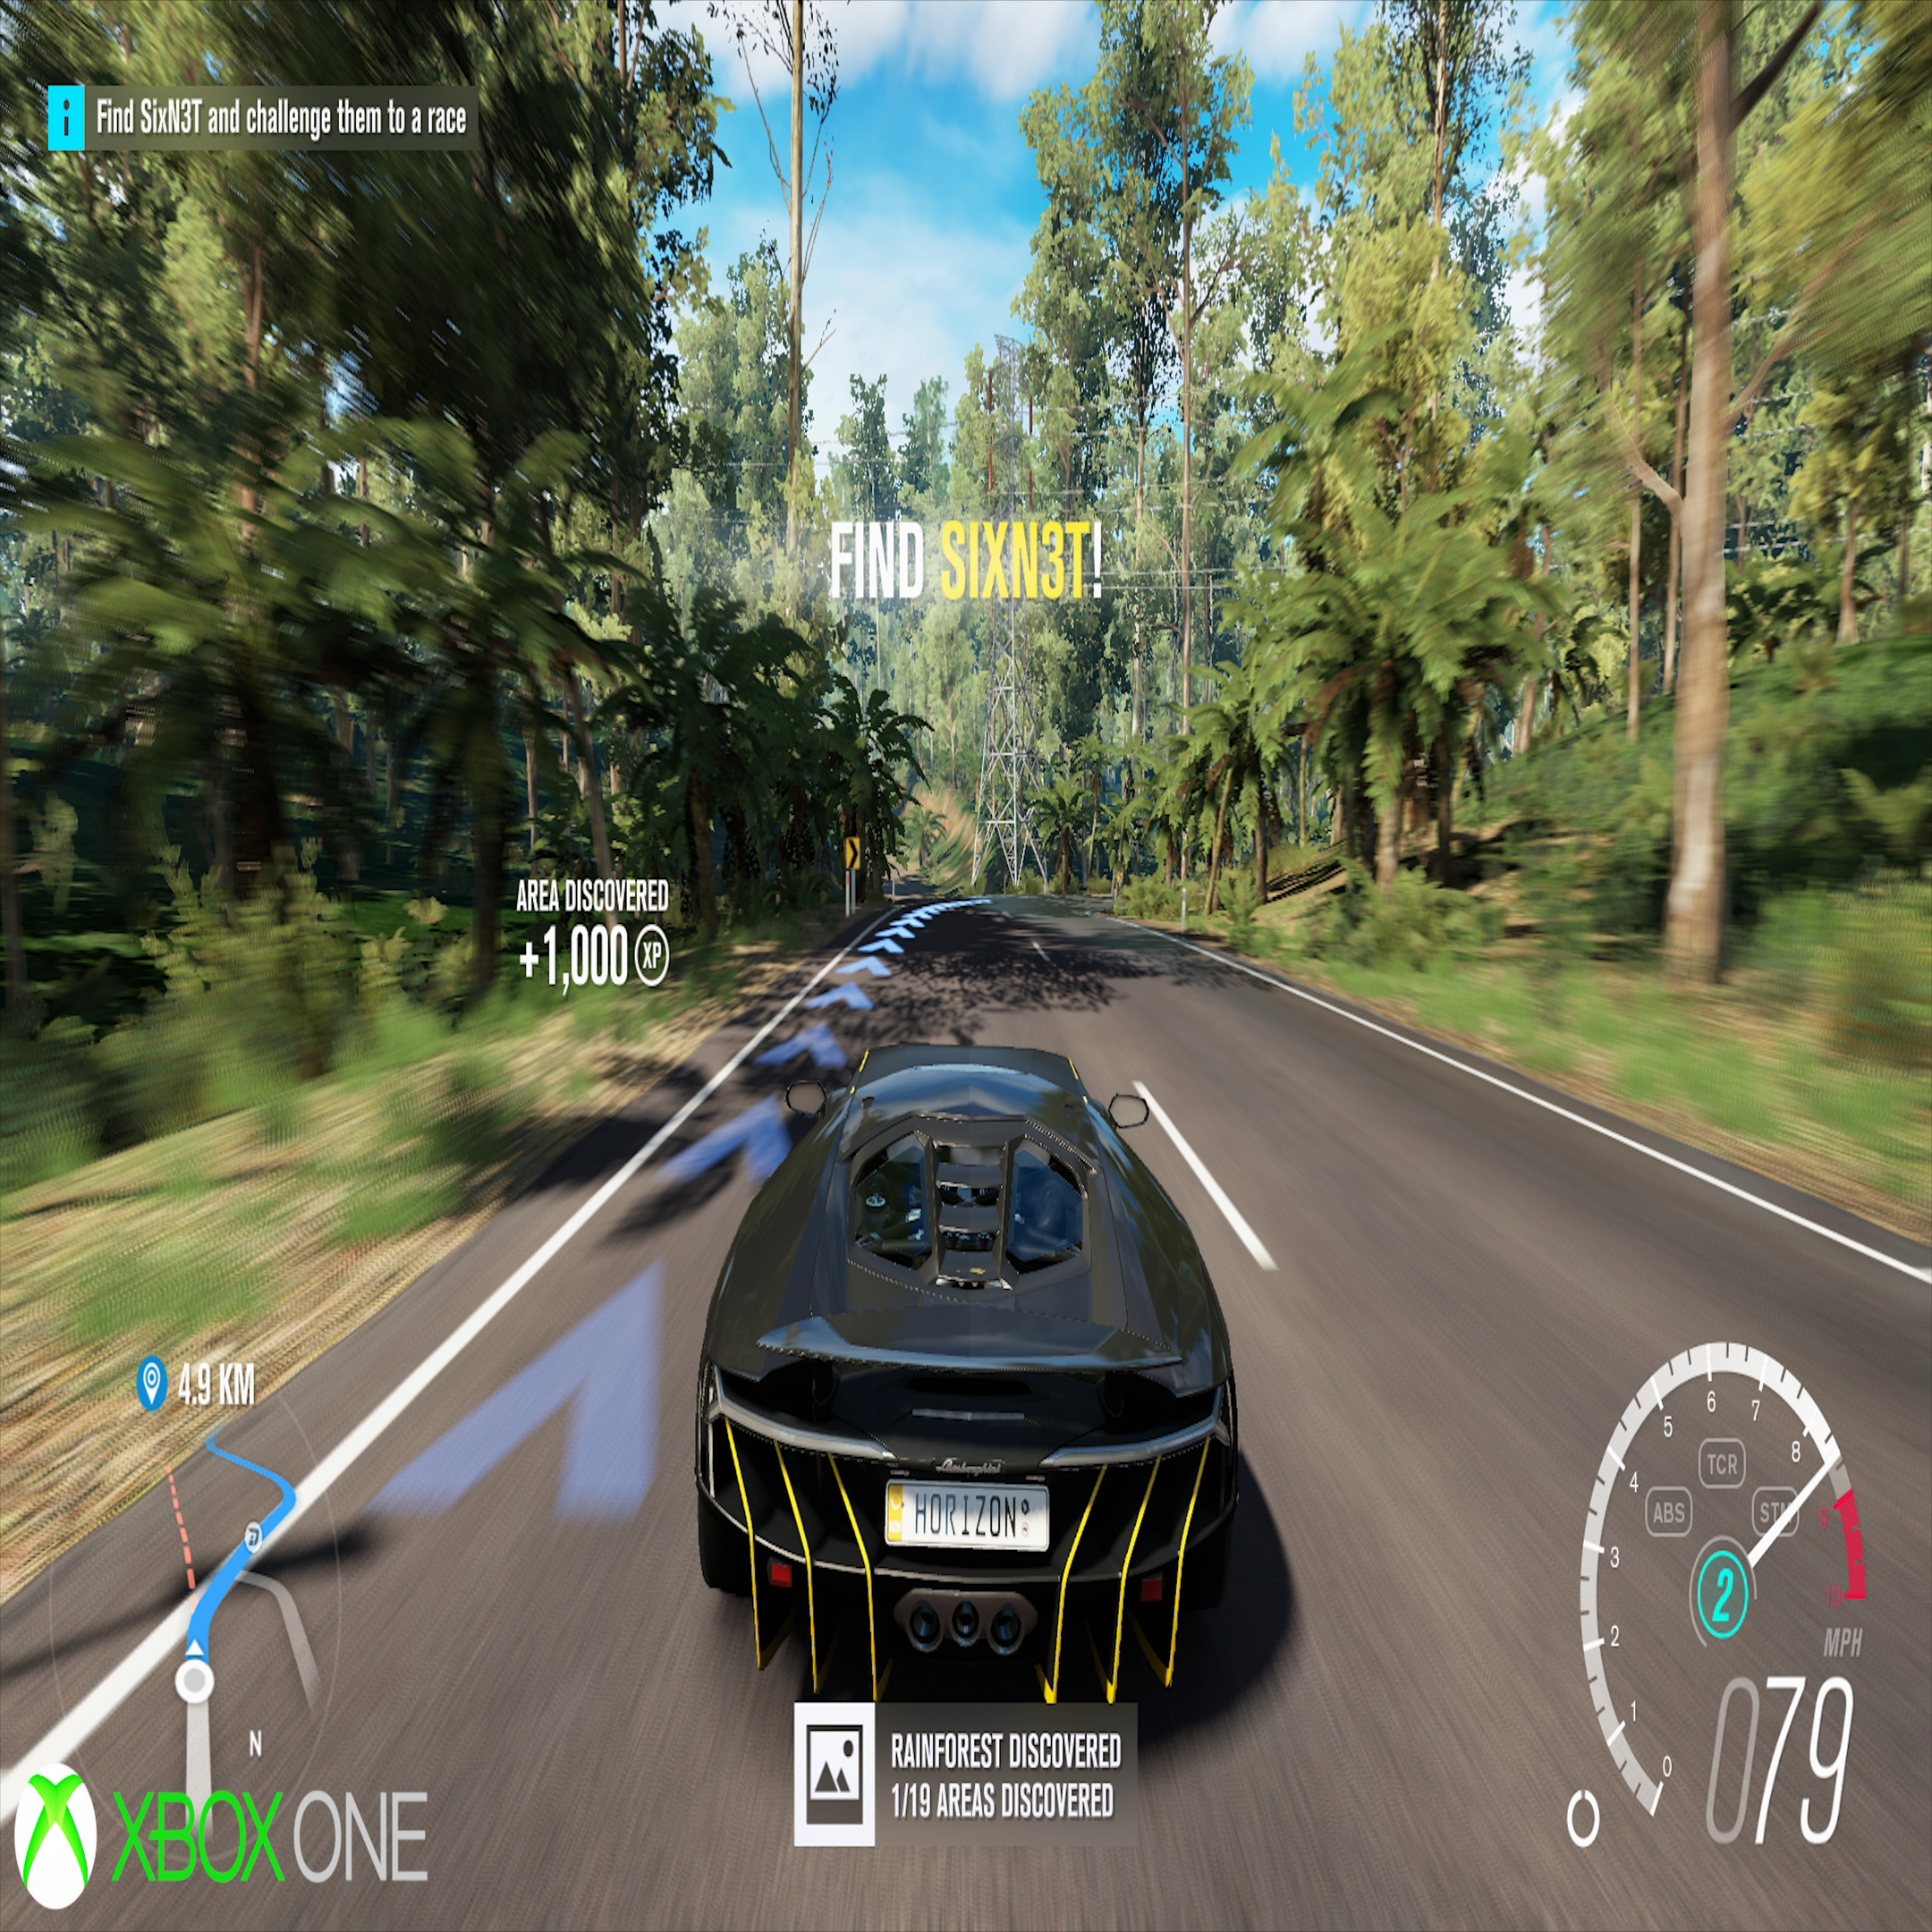 Forza Horizon 3 – Xbox One